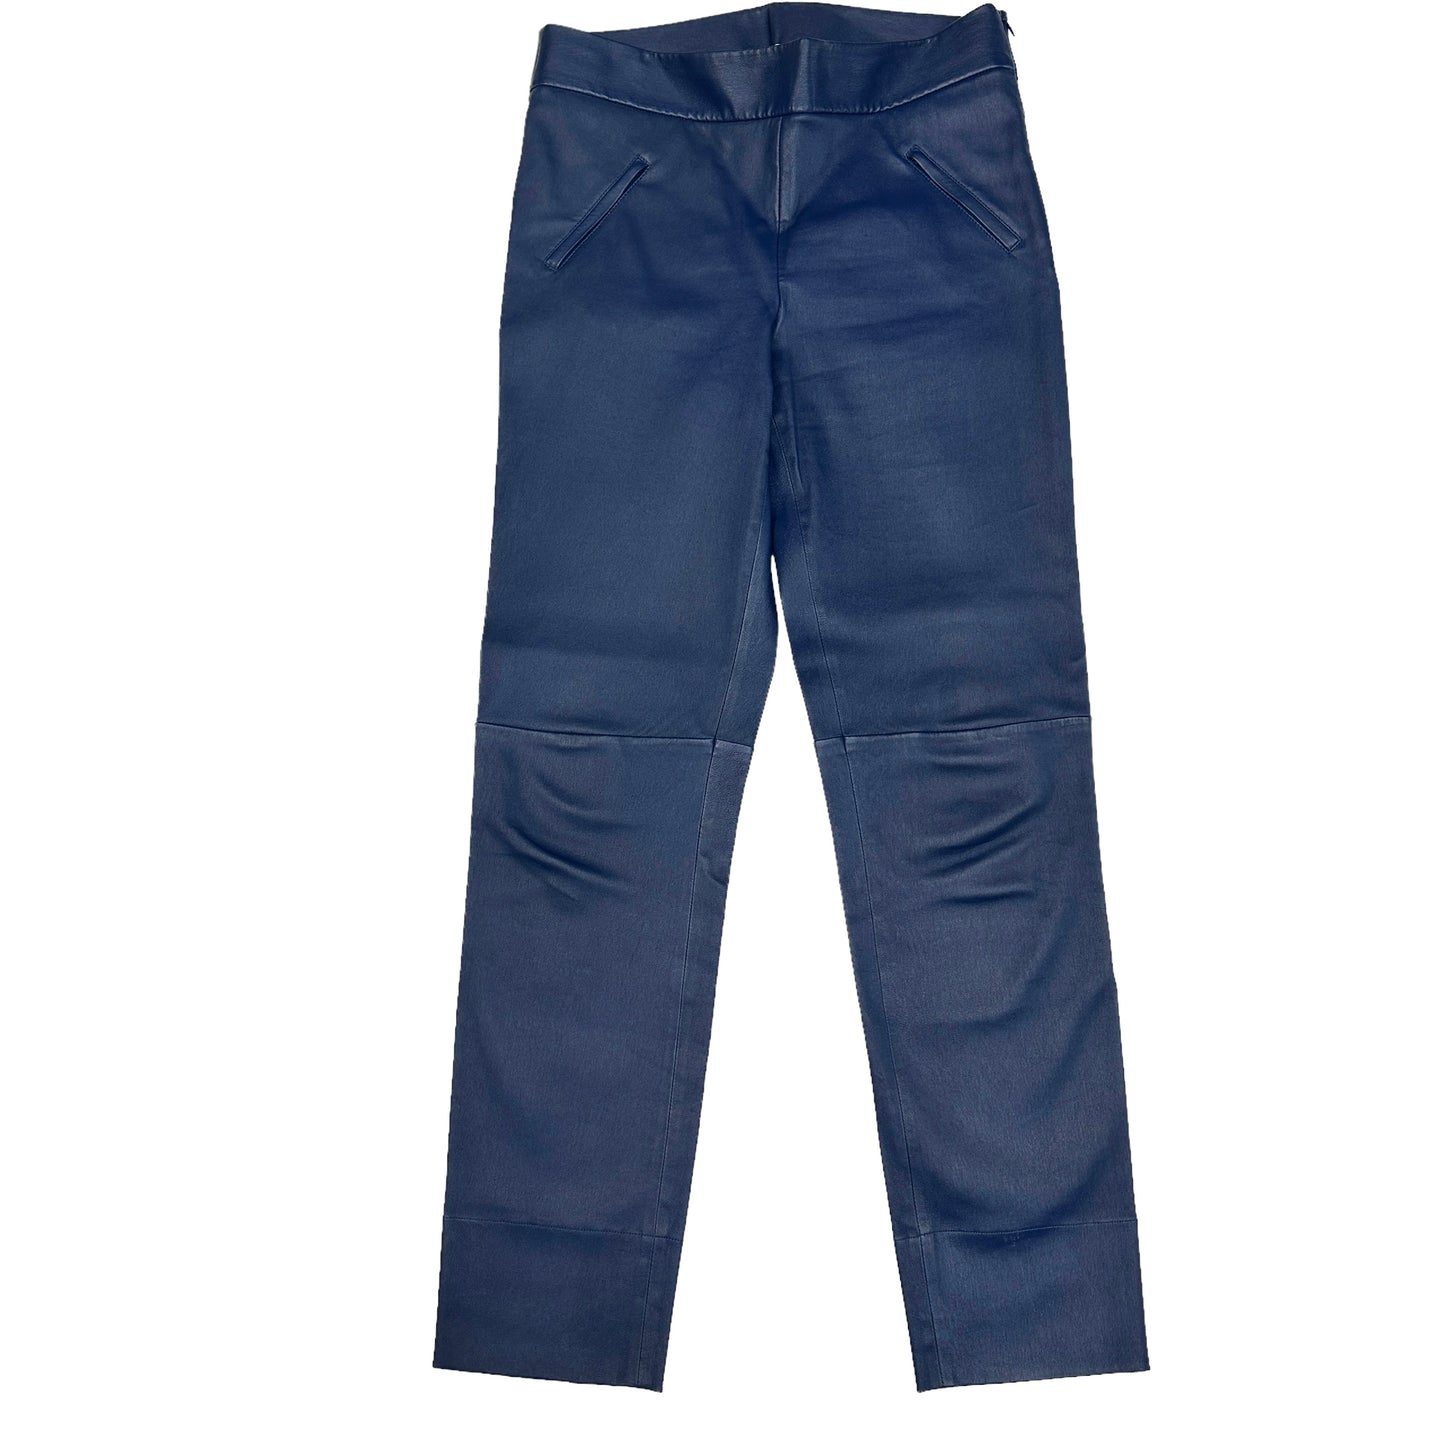 Blue Leather Pants - M